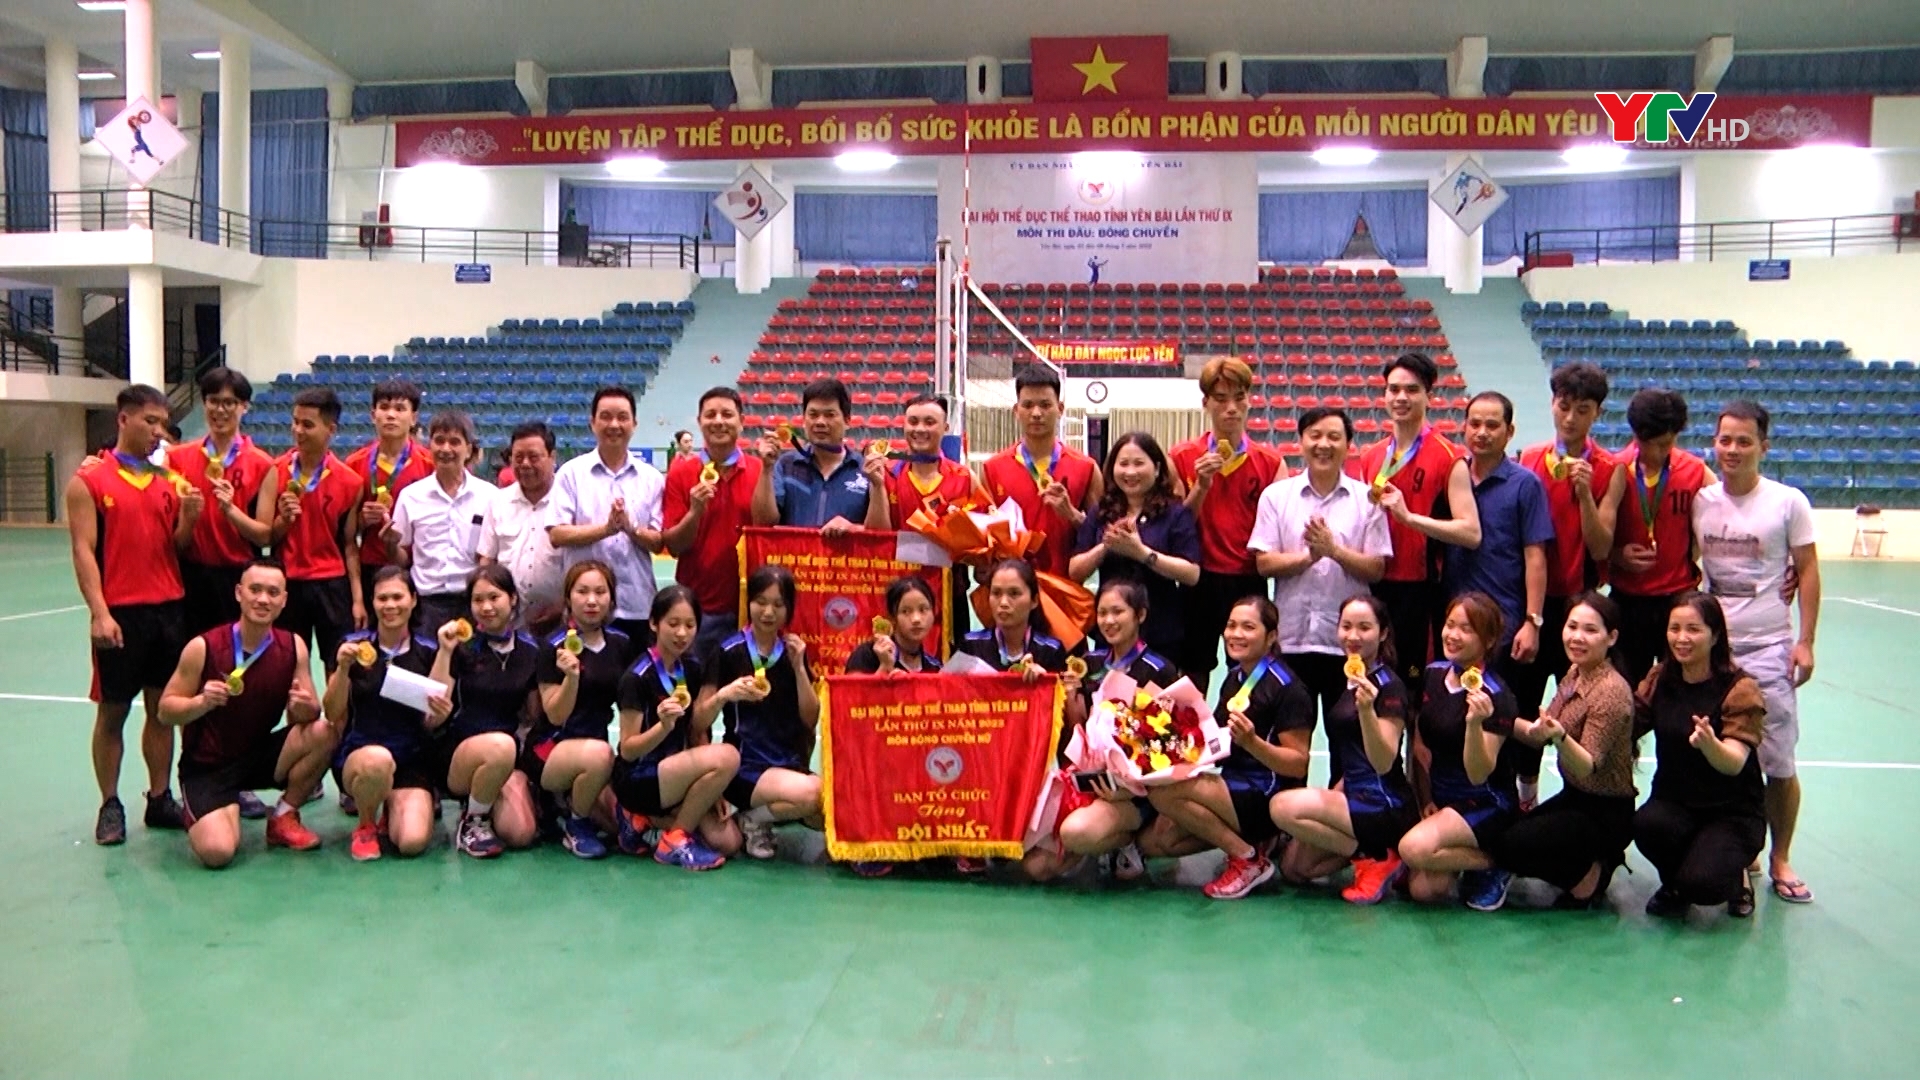 Chung kết môn Bóng chuyền - Đại hội Thể dục thể thao tỉnh Yên Bái lần thứ IX